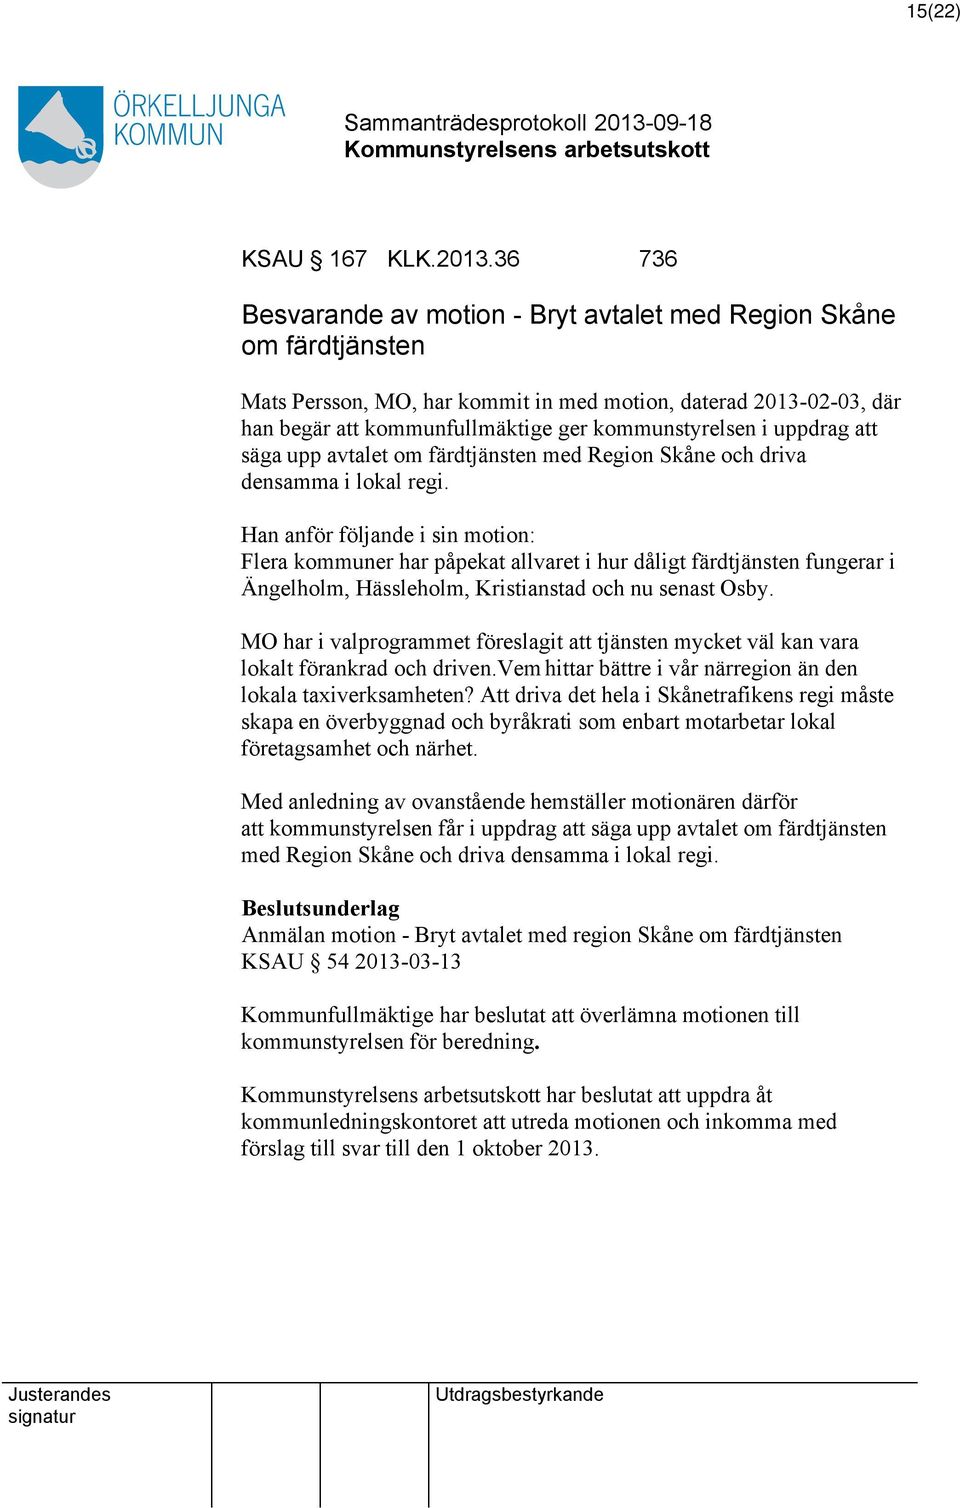 uppdrag säga upp avtalet om färdtjänsten med Region Skåne och driva densamma i lokal regi.